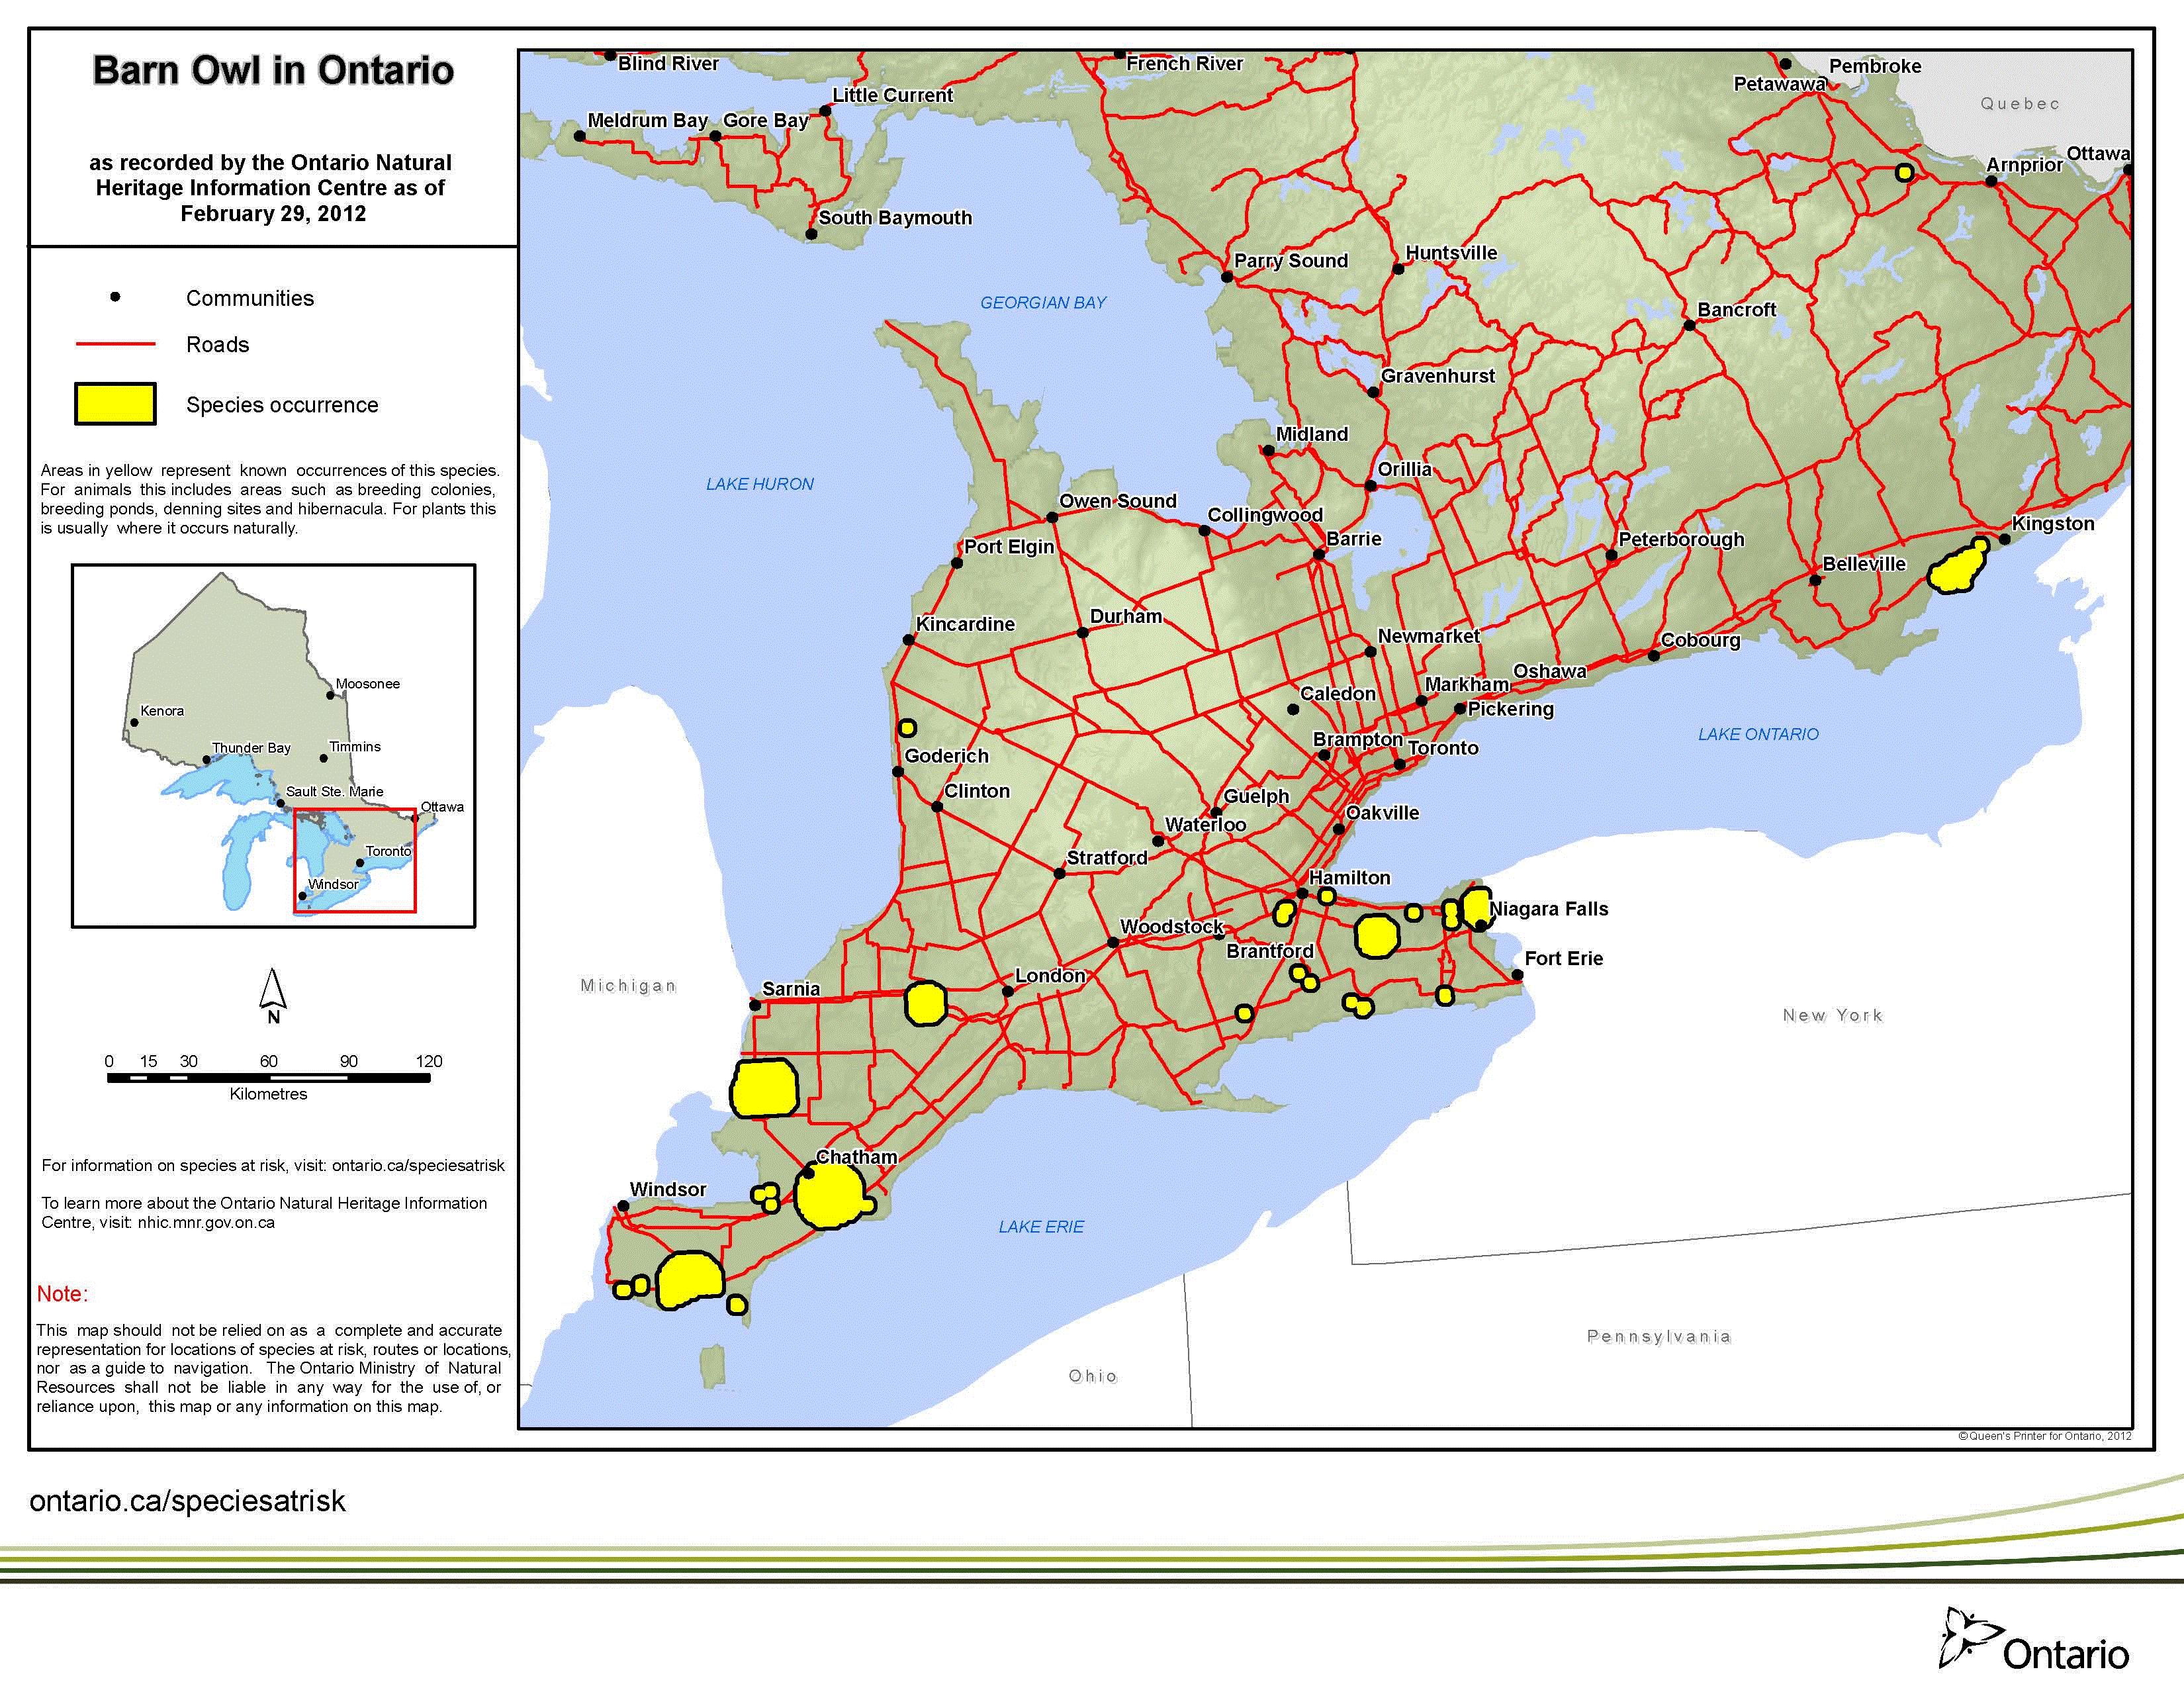 map of barn owl range